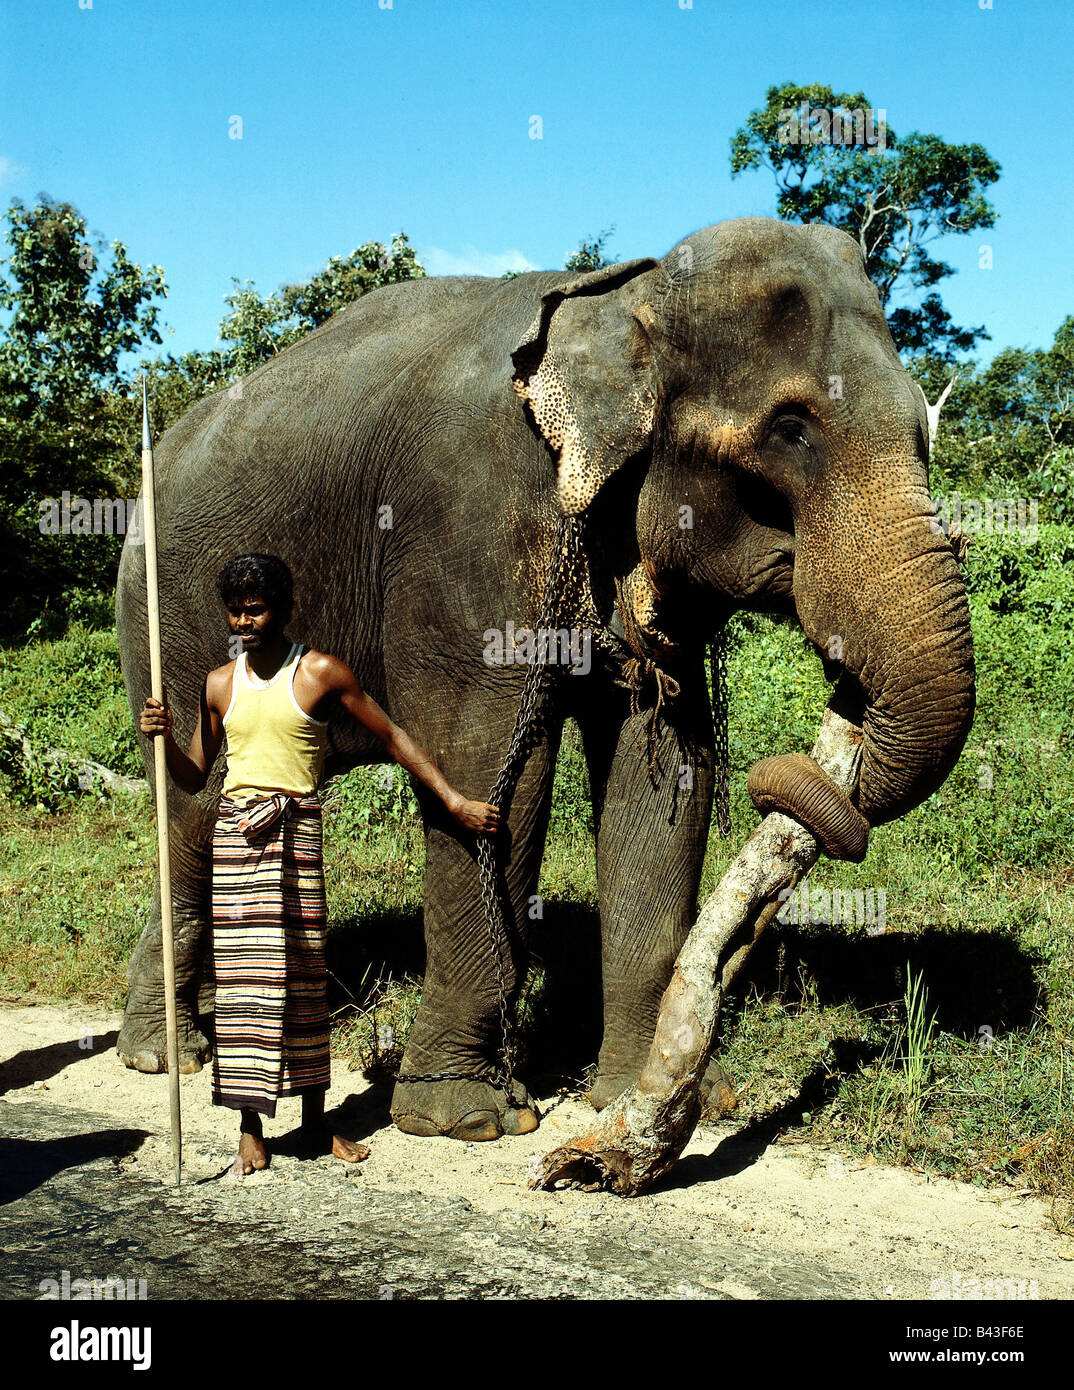 Zoologia / animali, mammifero / di mammifero, Elefanti Elefante asiatico, (Elephas maximus), lavorando in elefante in Ceylon, portando tronco di albero, distribuzione: Sri Lanka, Birmania, Tailandia, Malesia, Sumatra, India, Additional-Rights-Clearance-Info-Not-Available Foto Stock